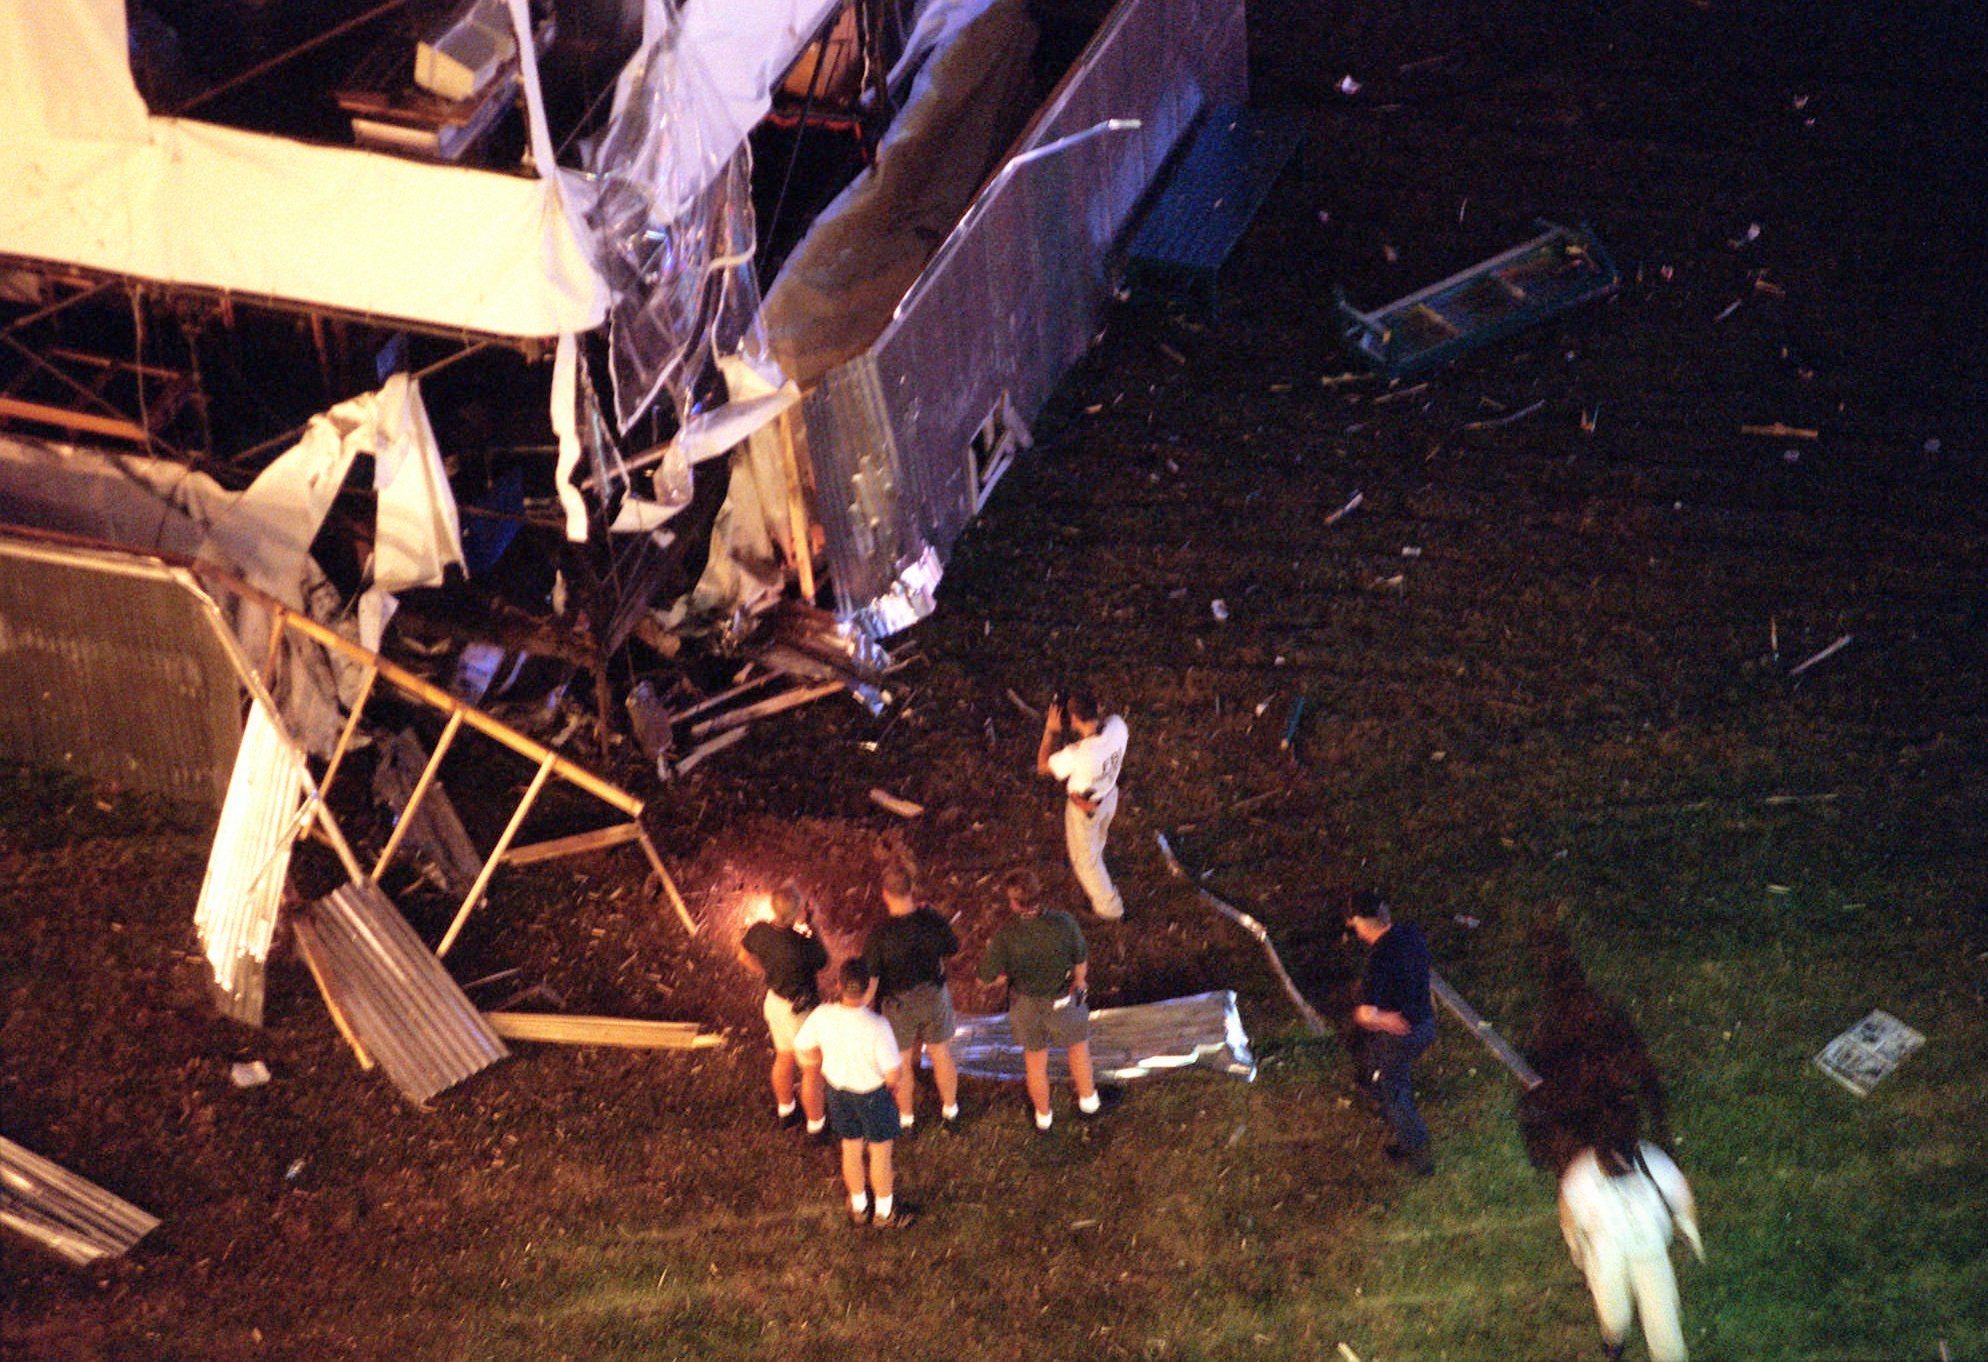 Scene of Centennial Olympic Park explosion in Atlanta in 1996